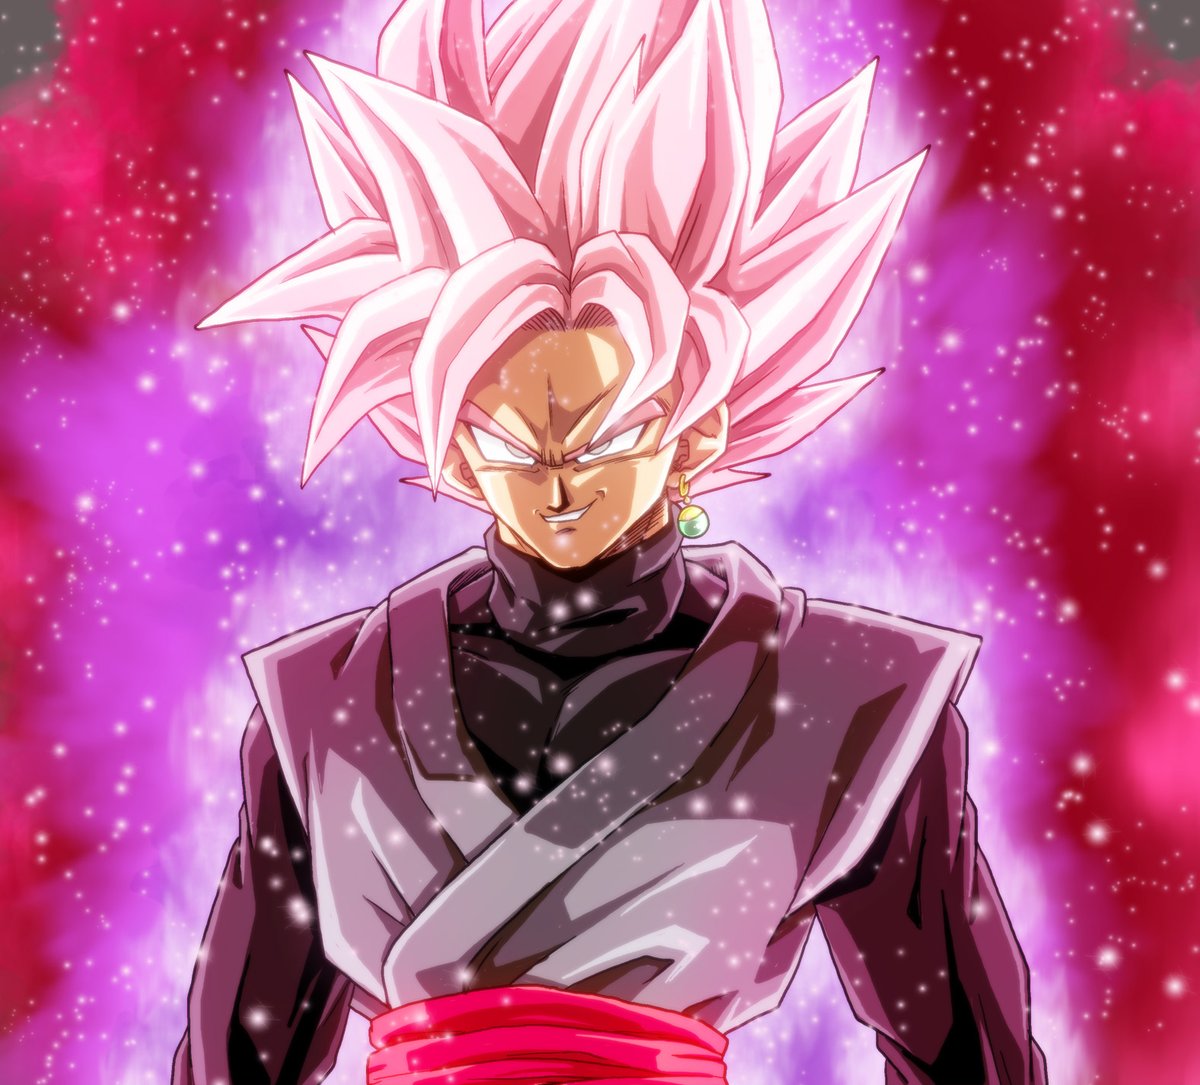 Goku Black Super Saiyan Rose By Gokussj20 On Deviantart